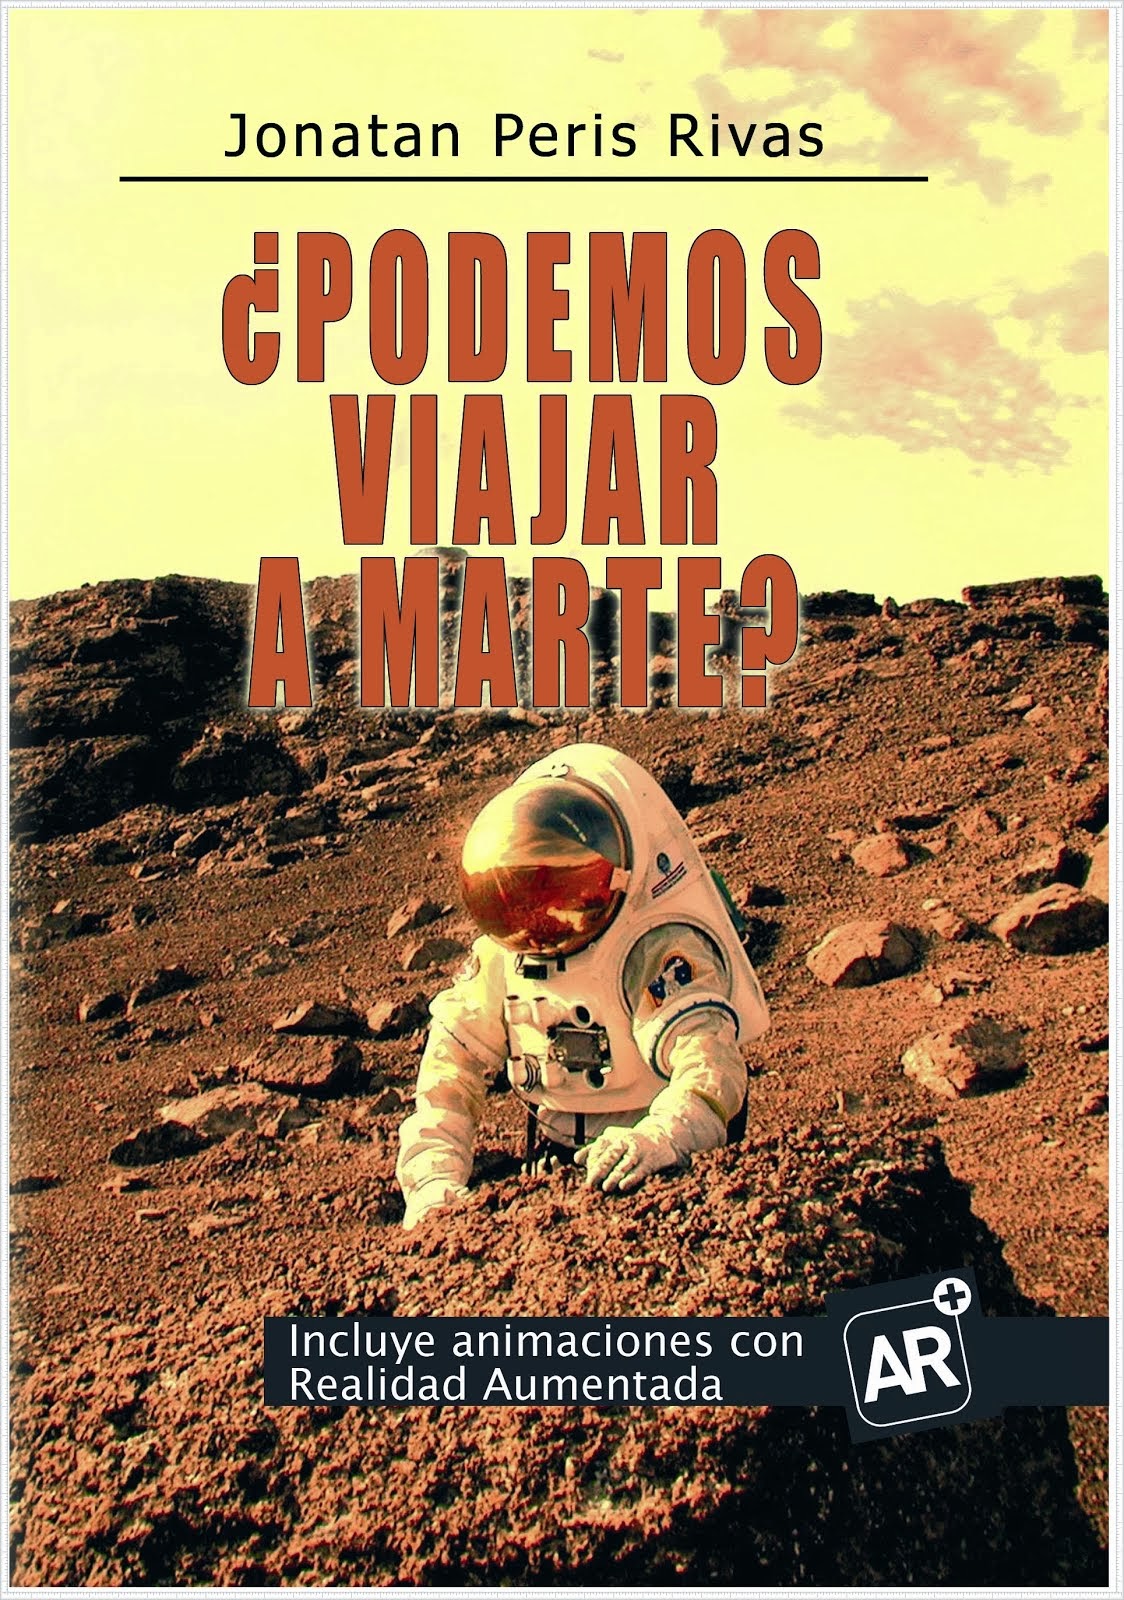 Adquiere mi libro "¿Podemos viajar a Marte?"